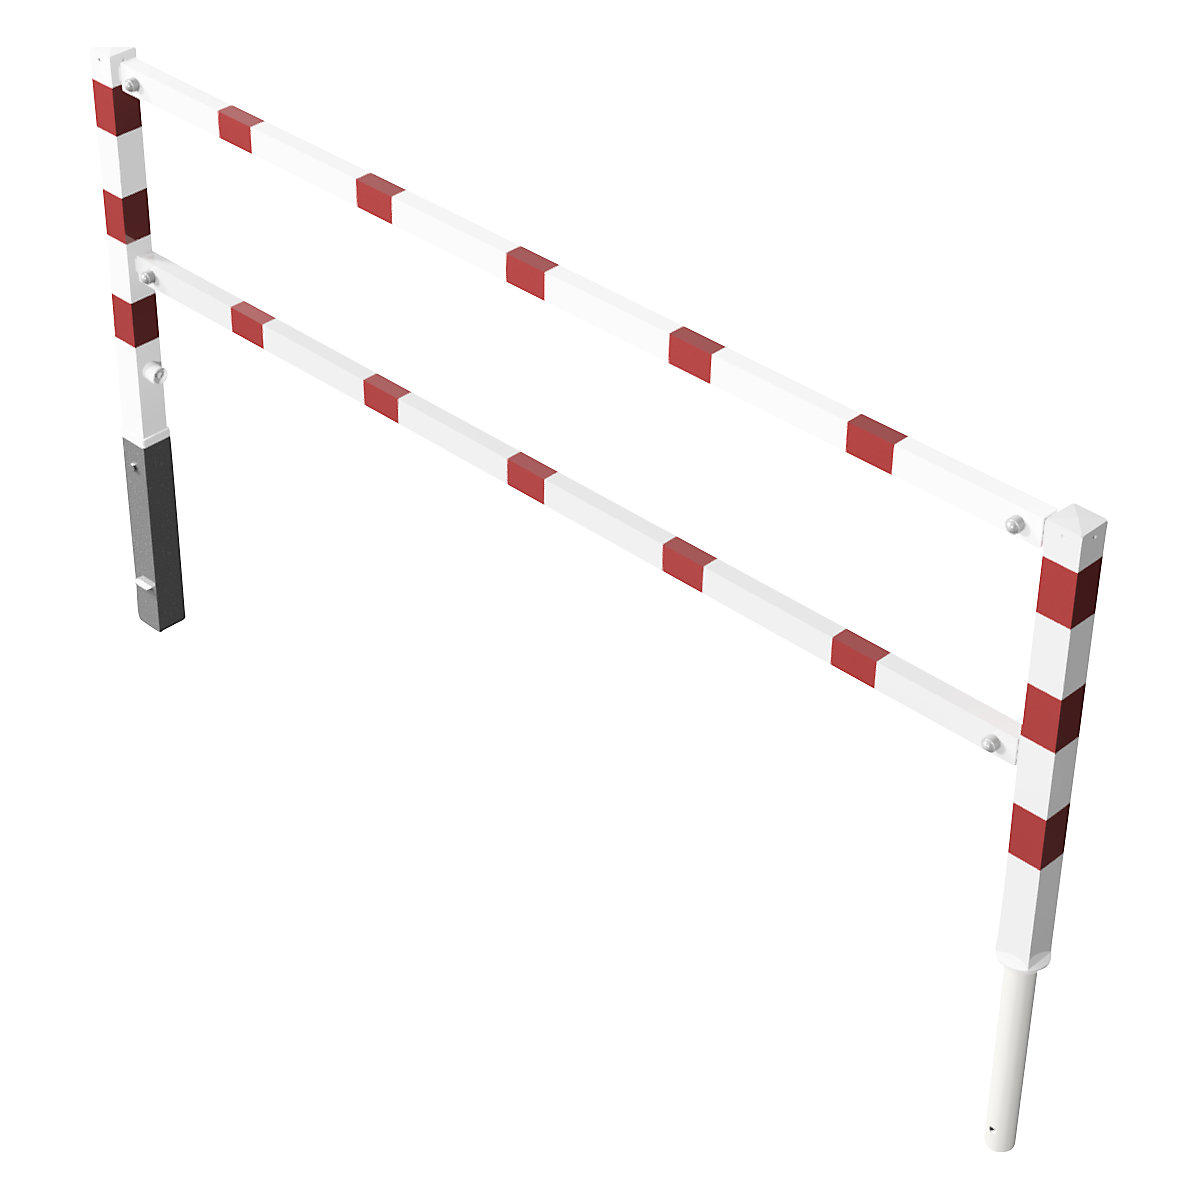 Barrière pivotante, avec barre supérieure et au niveau des genoux, blanc avec bandes réfléchissantes rouges, largeur 2500 mm-5